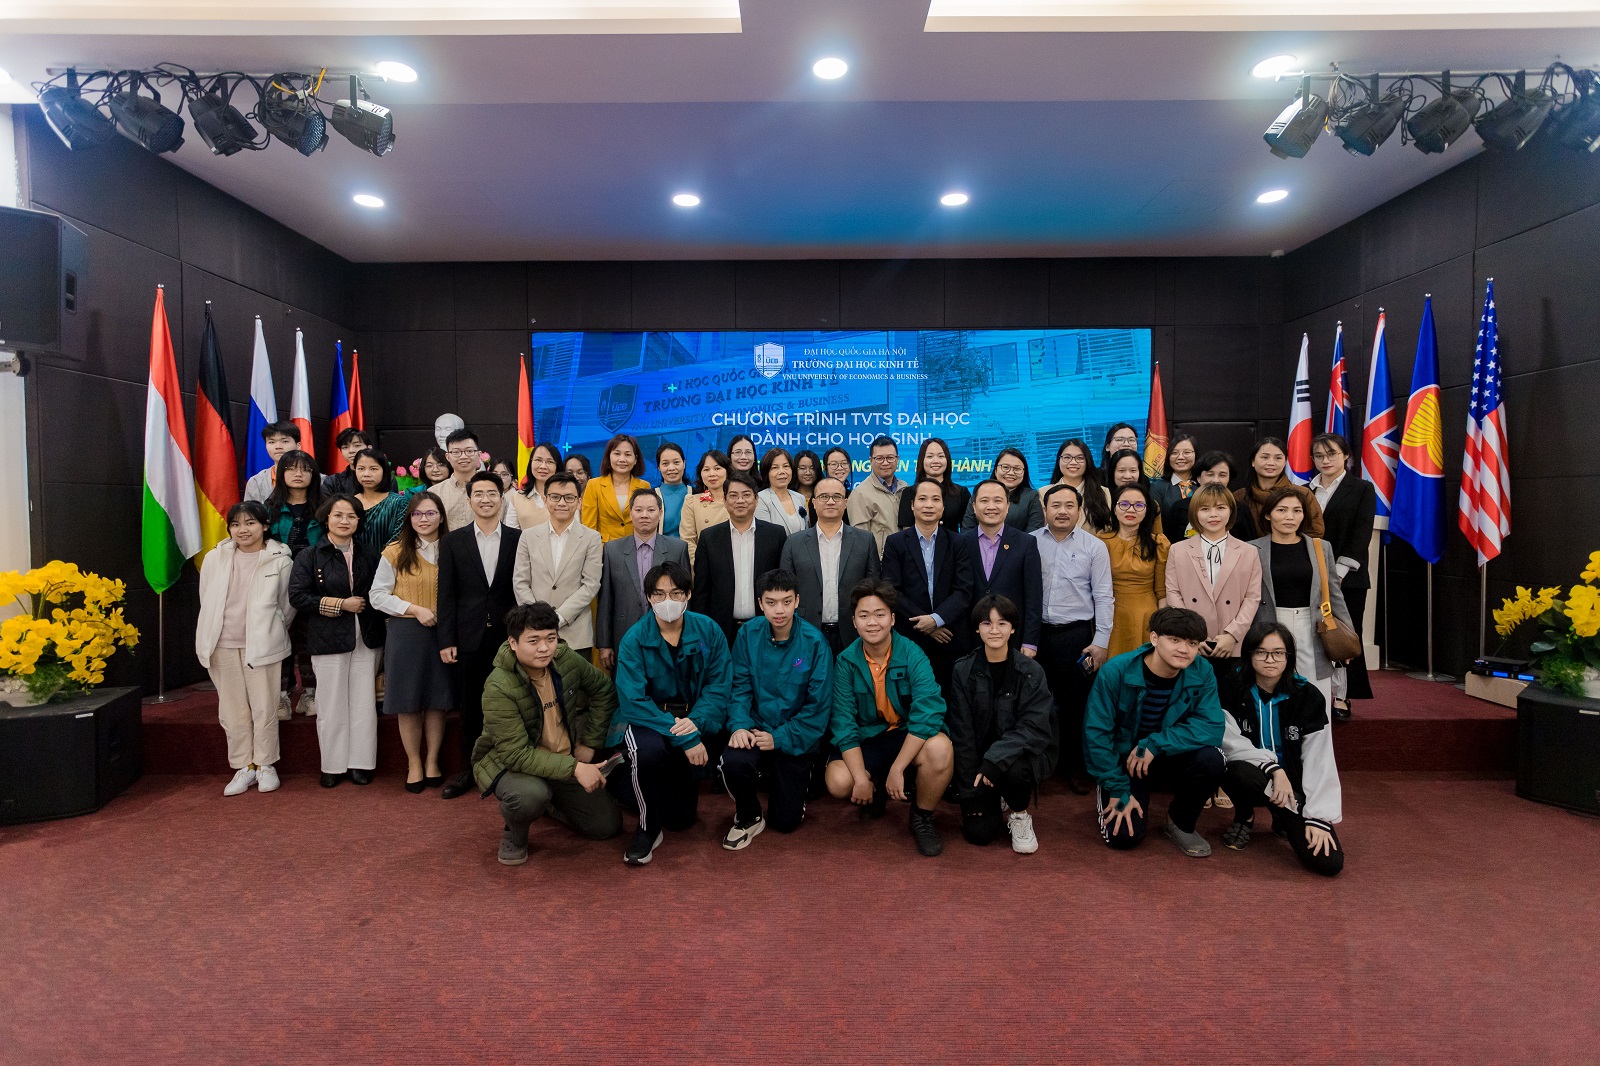 Trường Đại học Kinh tế - ĐHQGHN tư vấn tuyển sinh đại học cho hơn 200 học sinh và phụ huynh trường THPT Nguyễn Tất Thành (Đại học Sư phạm Hà Nội)